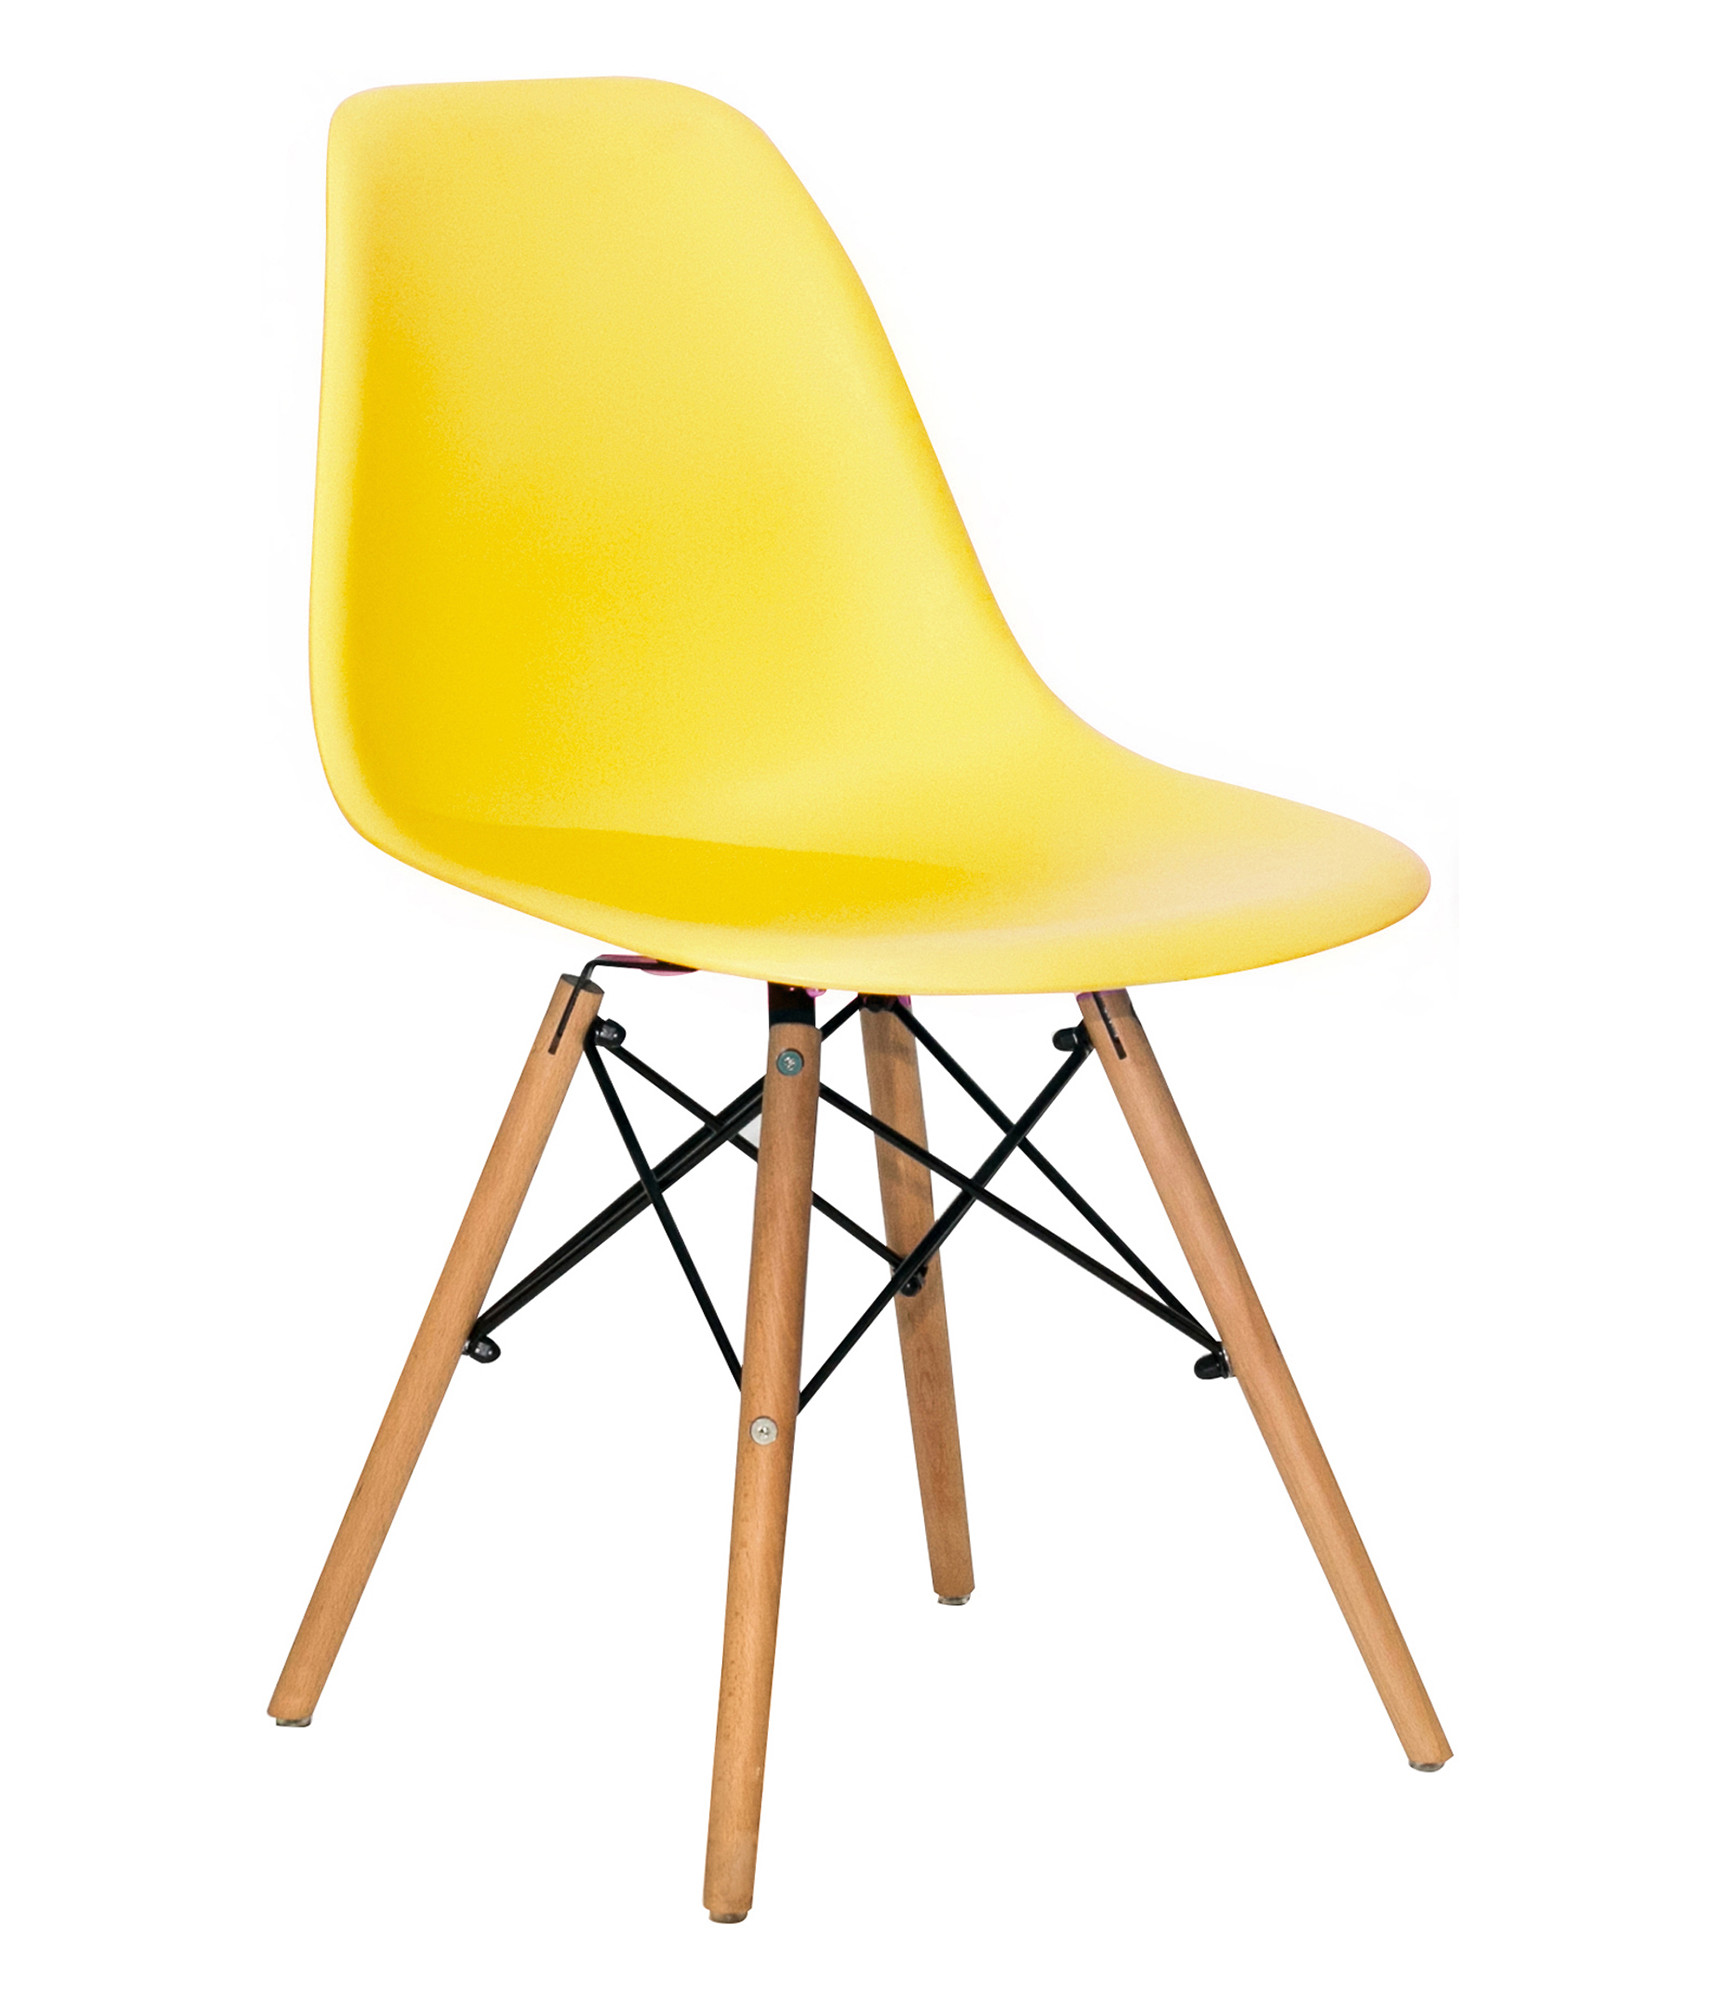 Стул-кресло Eames DSW желтый, ножки дерево